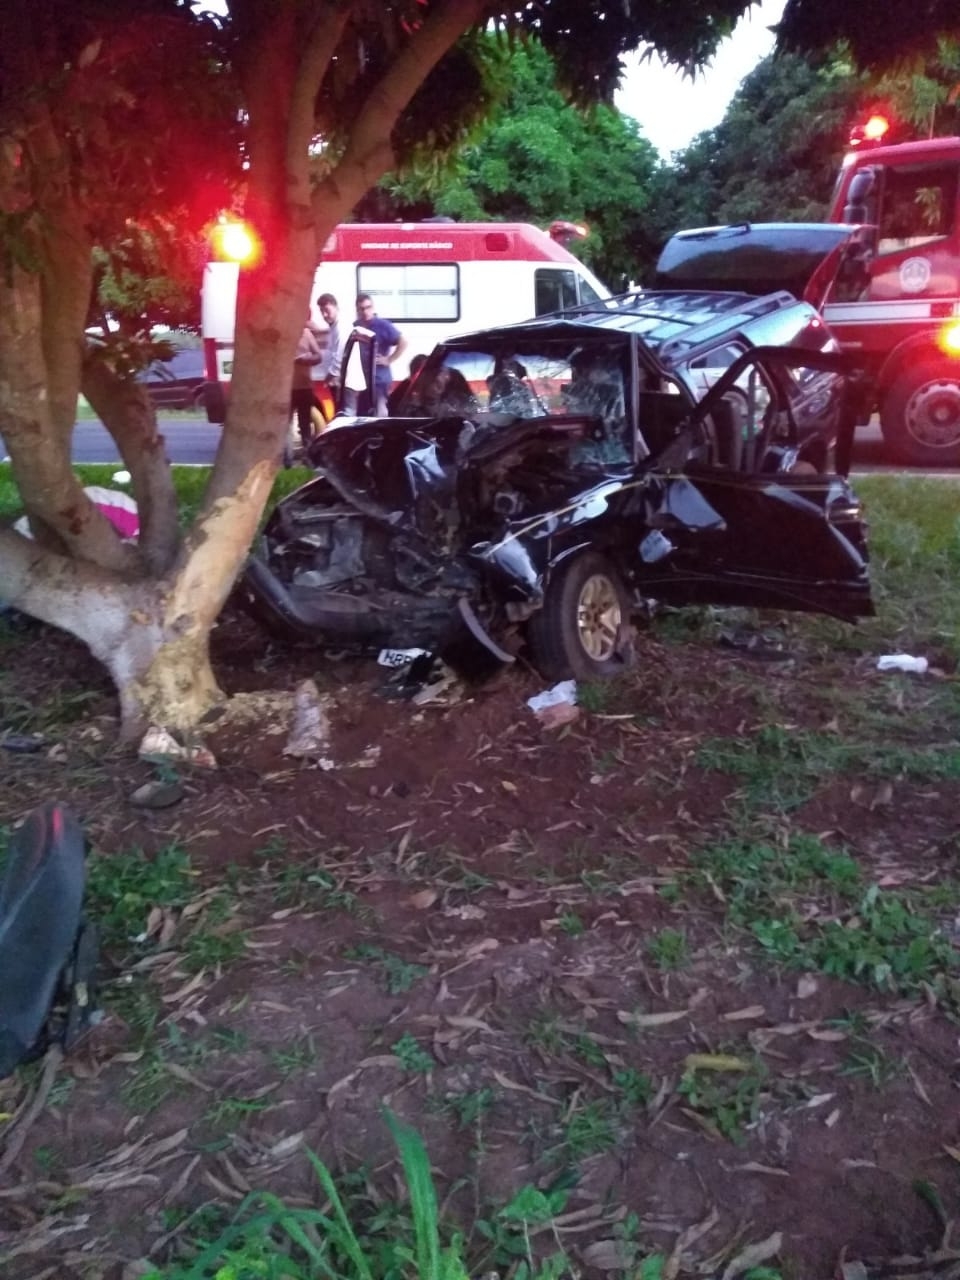 Santa Rita D'Oeste - Motorista infarta ao volante e morre após colidir com árvore